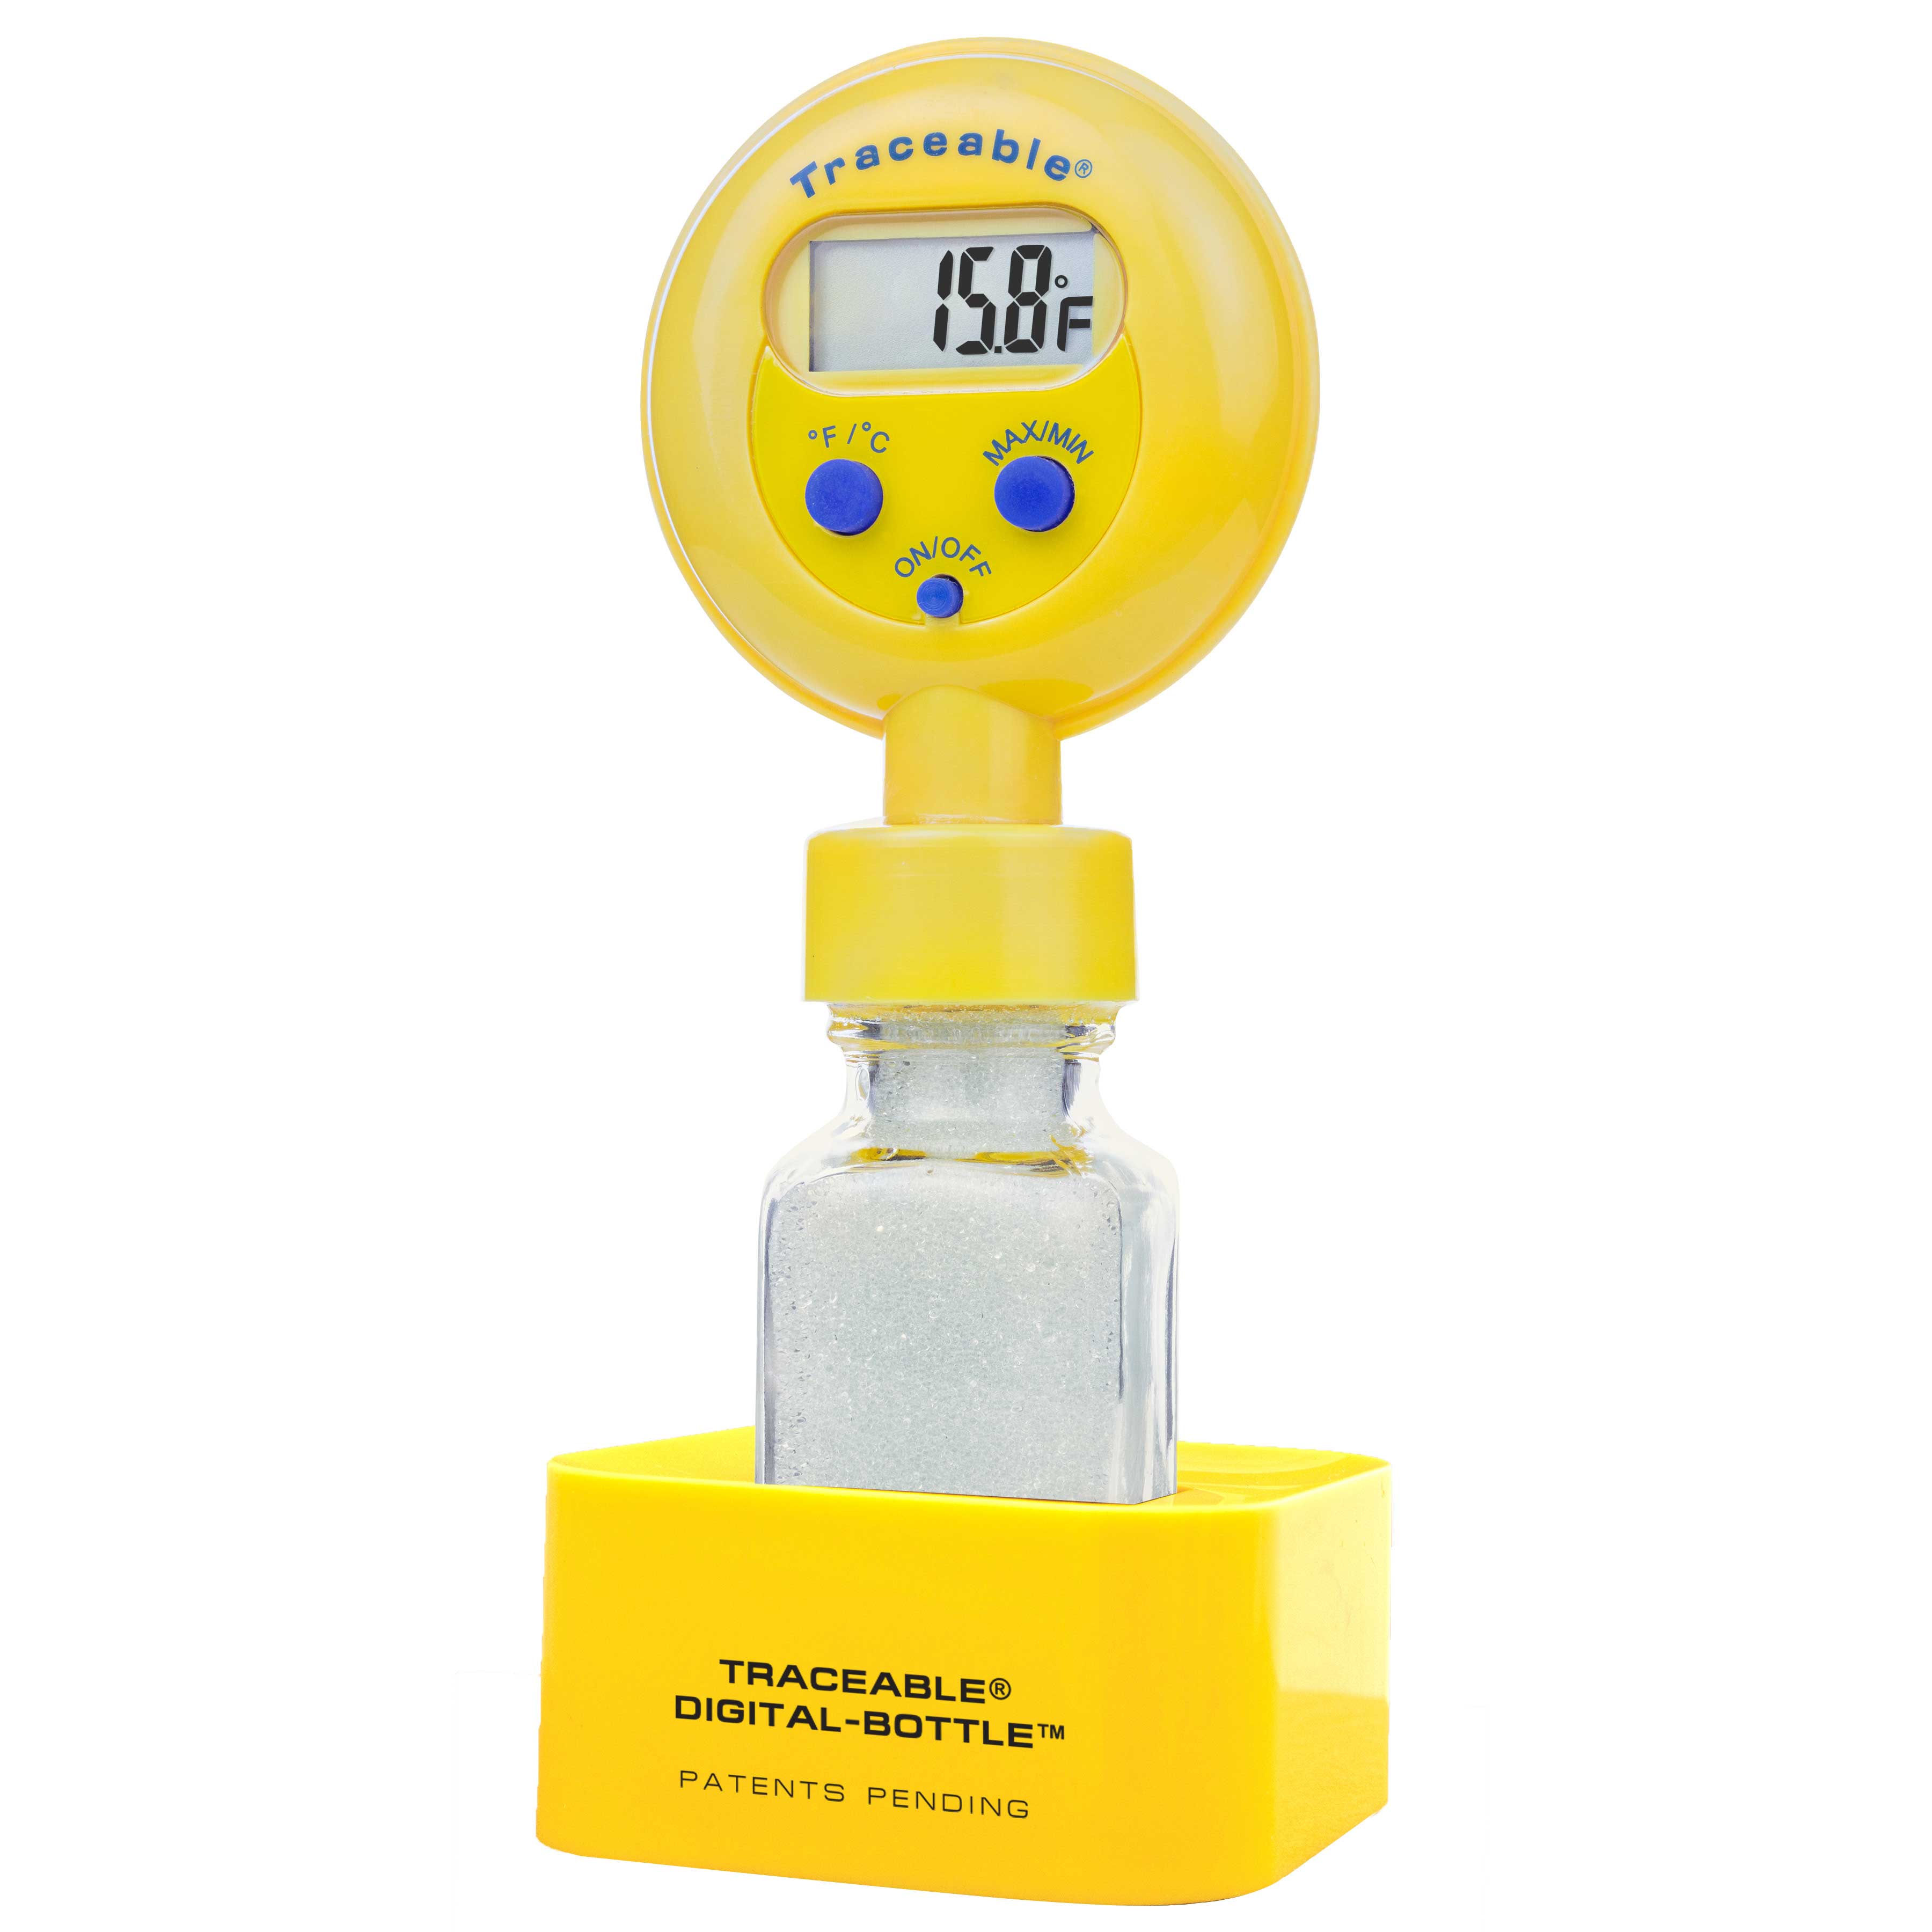 Termómetro para refrigerador/congelador Traceable Digital-Bottle. TRACEABLE. Rango temp.: –20,0 a 50,0°C. Exactitud: ±0,5°C (0 a 50ºC), ±1°C resto. Precisión: 0,1ºC. Sondas: Botella llena de cuentas de vidrio